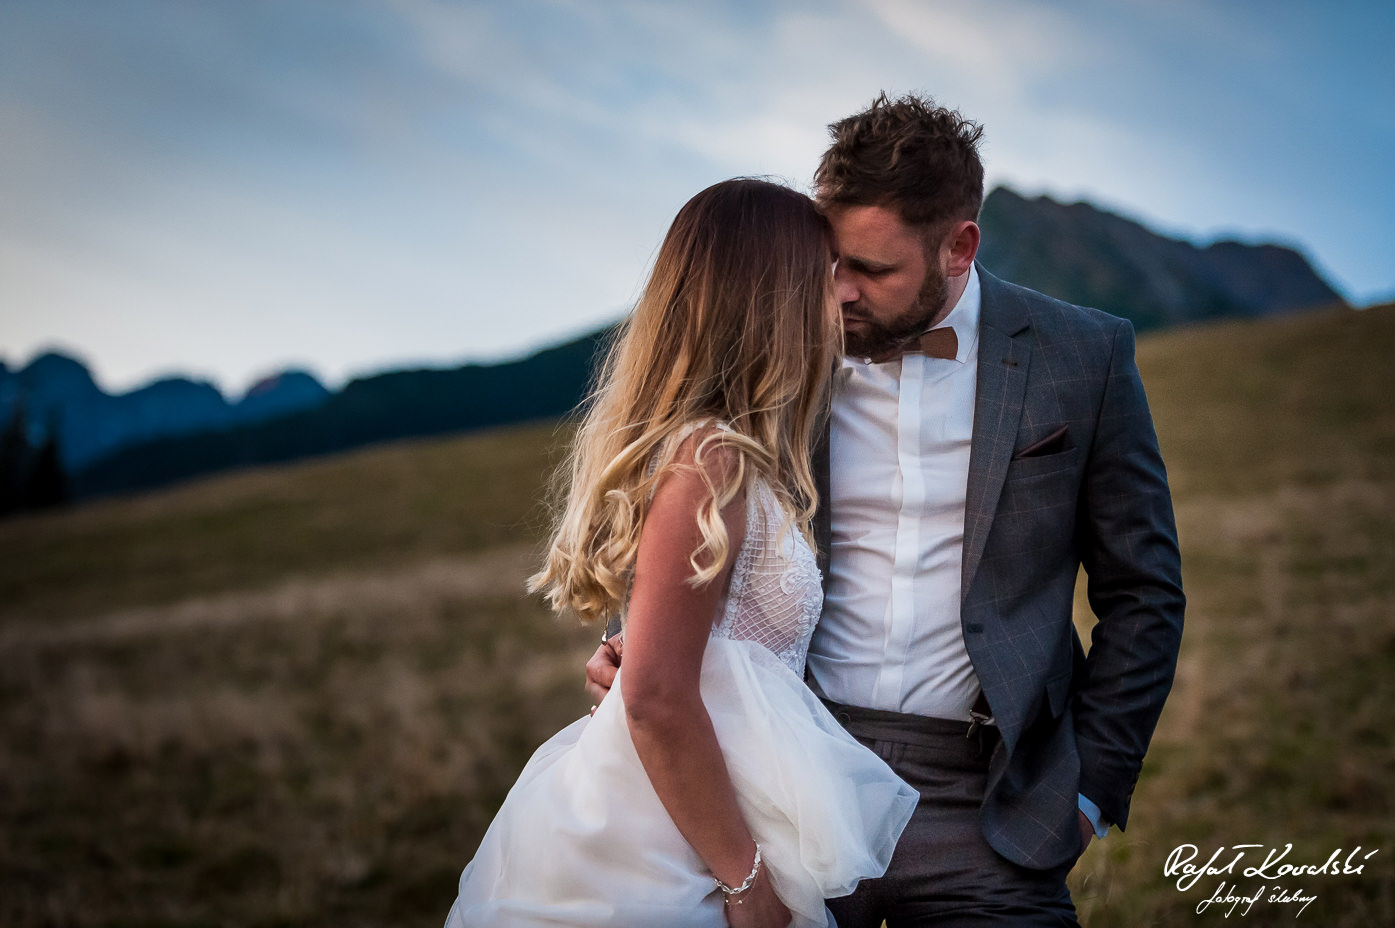 Sesja ślubna w Tatrach to niezapomniane przeżycie zarówno dla pary młodej jak i dla fotografa